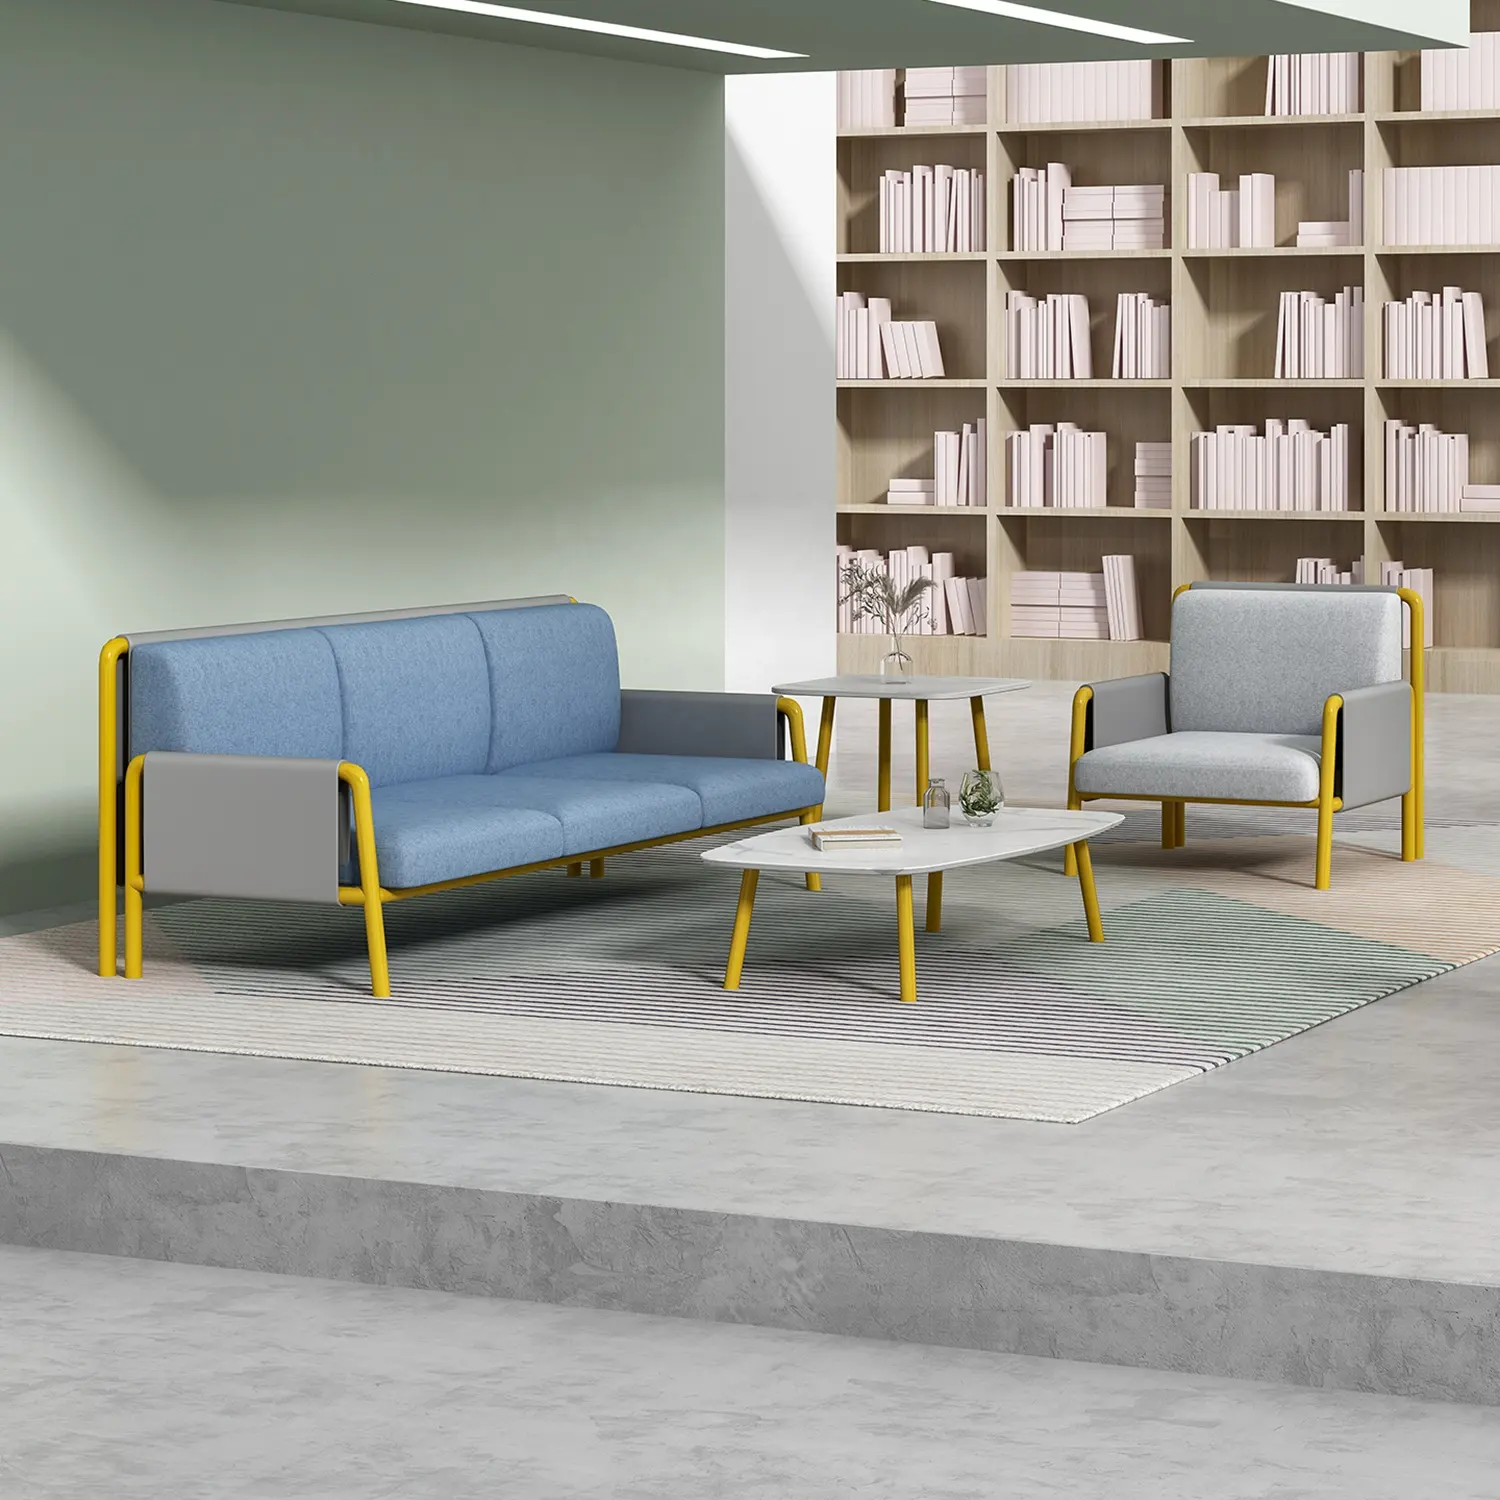 Simples Italiano Lazer Cadeira Escritório Lounge Area Casa Varanda Cadeira reclinável Simulação Couro Sofá Preguiçoso